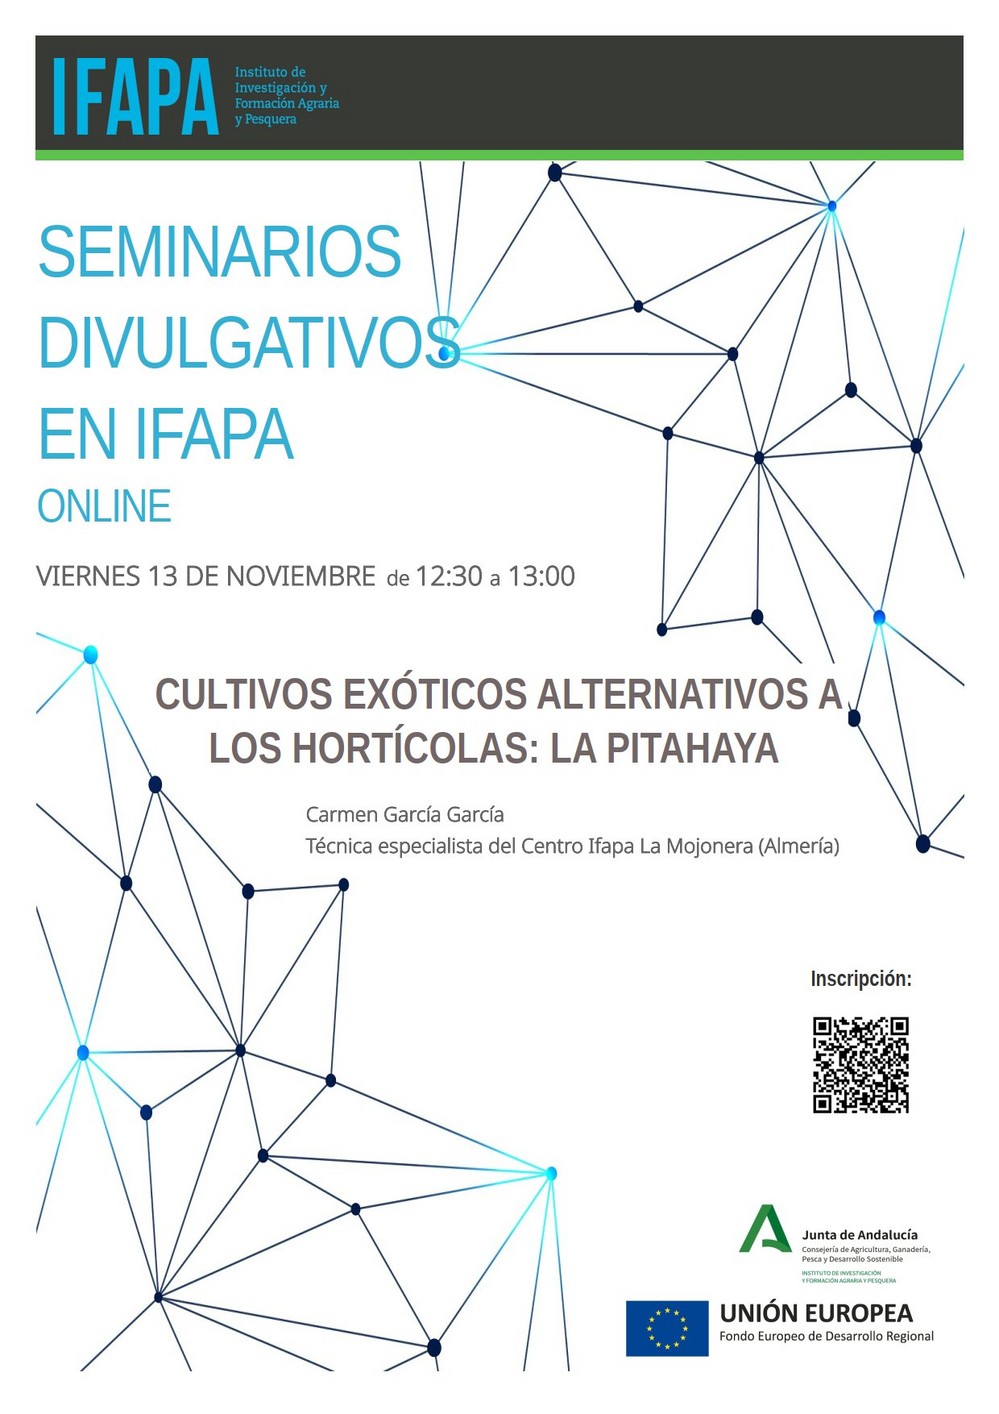 IFAPA ofrece un seminario sobre cultivos exóticos alternativos a los hortícolas: la pitahaya